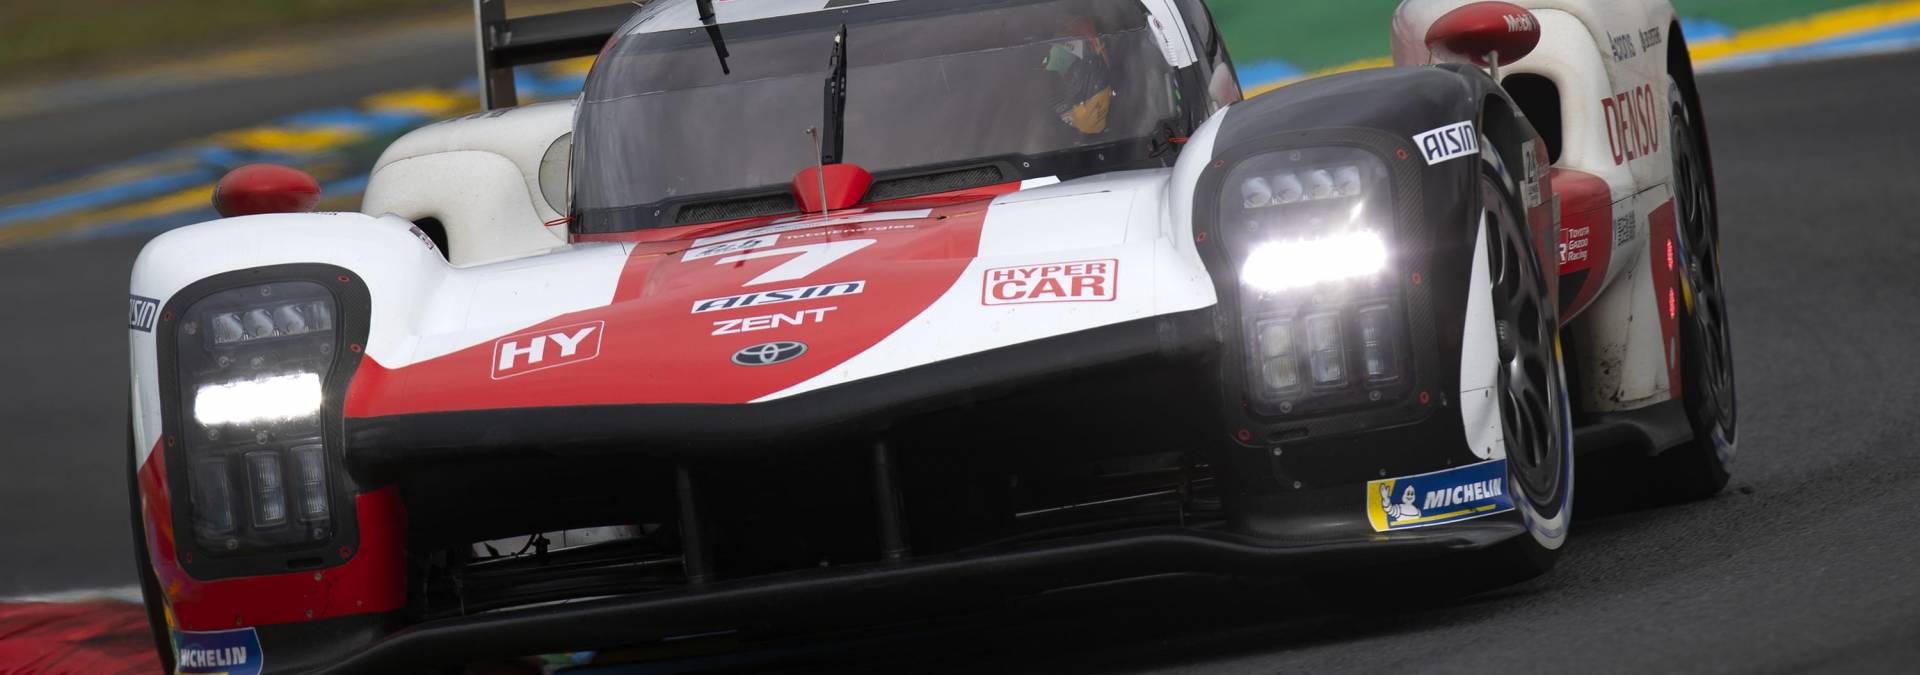 Zespół Toyota Gazoo Racing gotowy na finał sezonu WEC w Bahrajnie